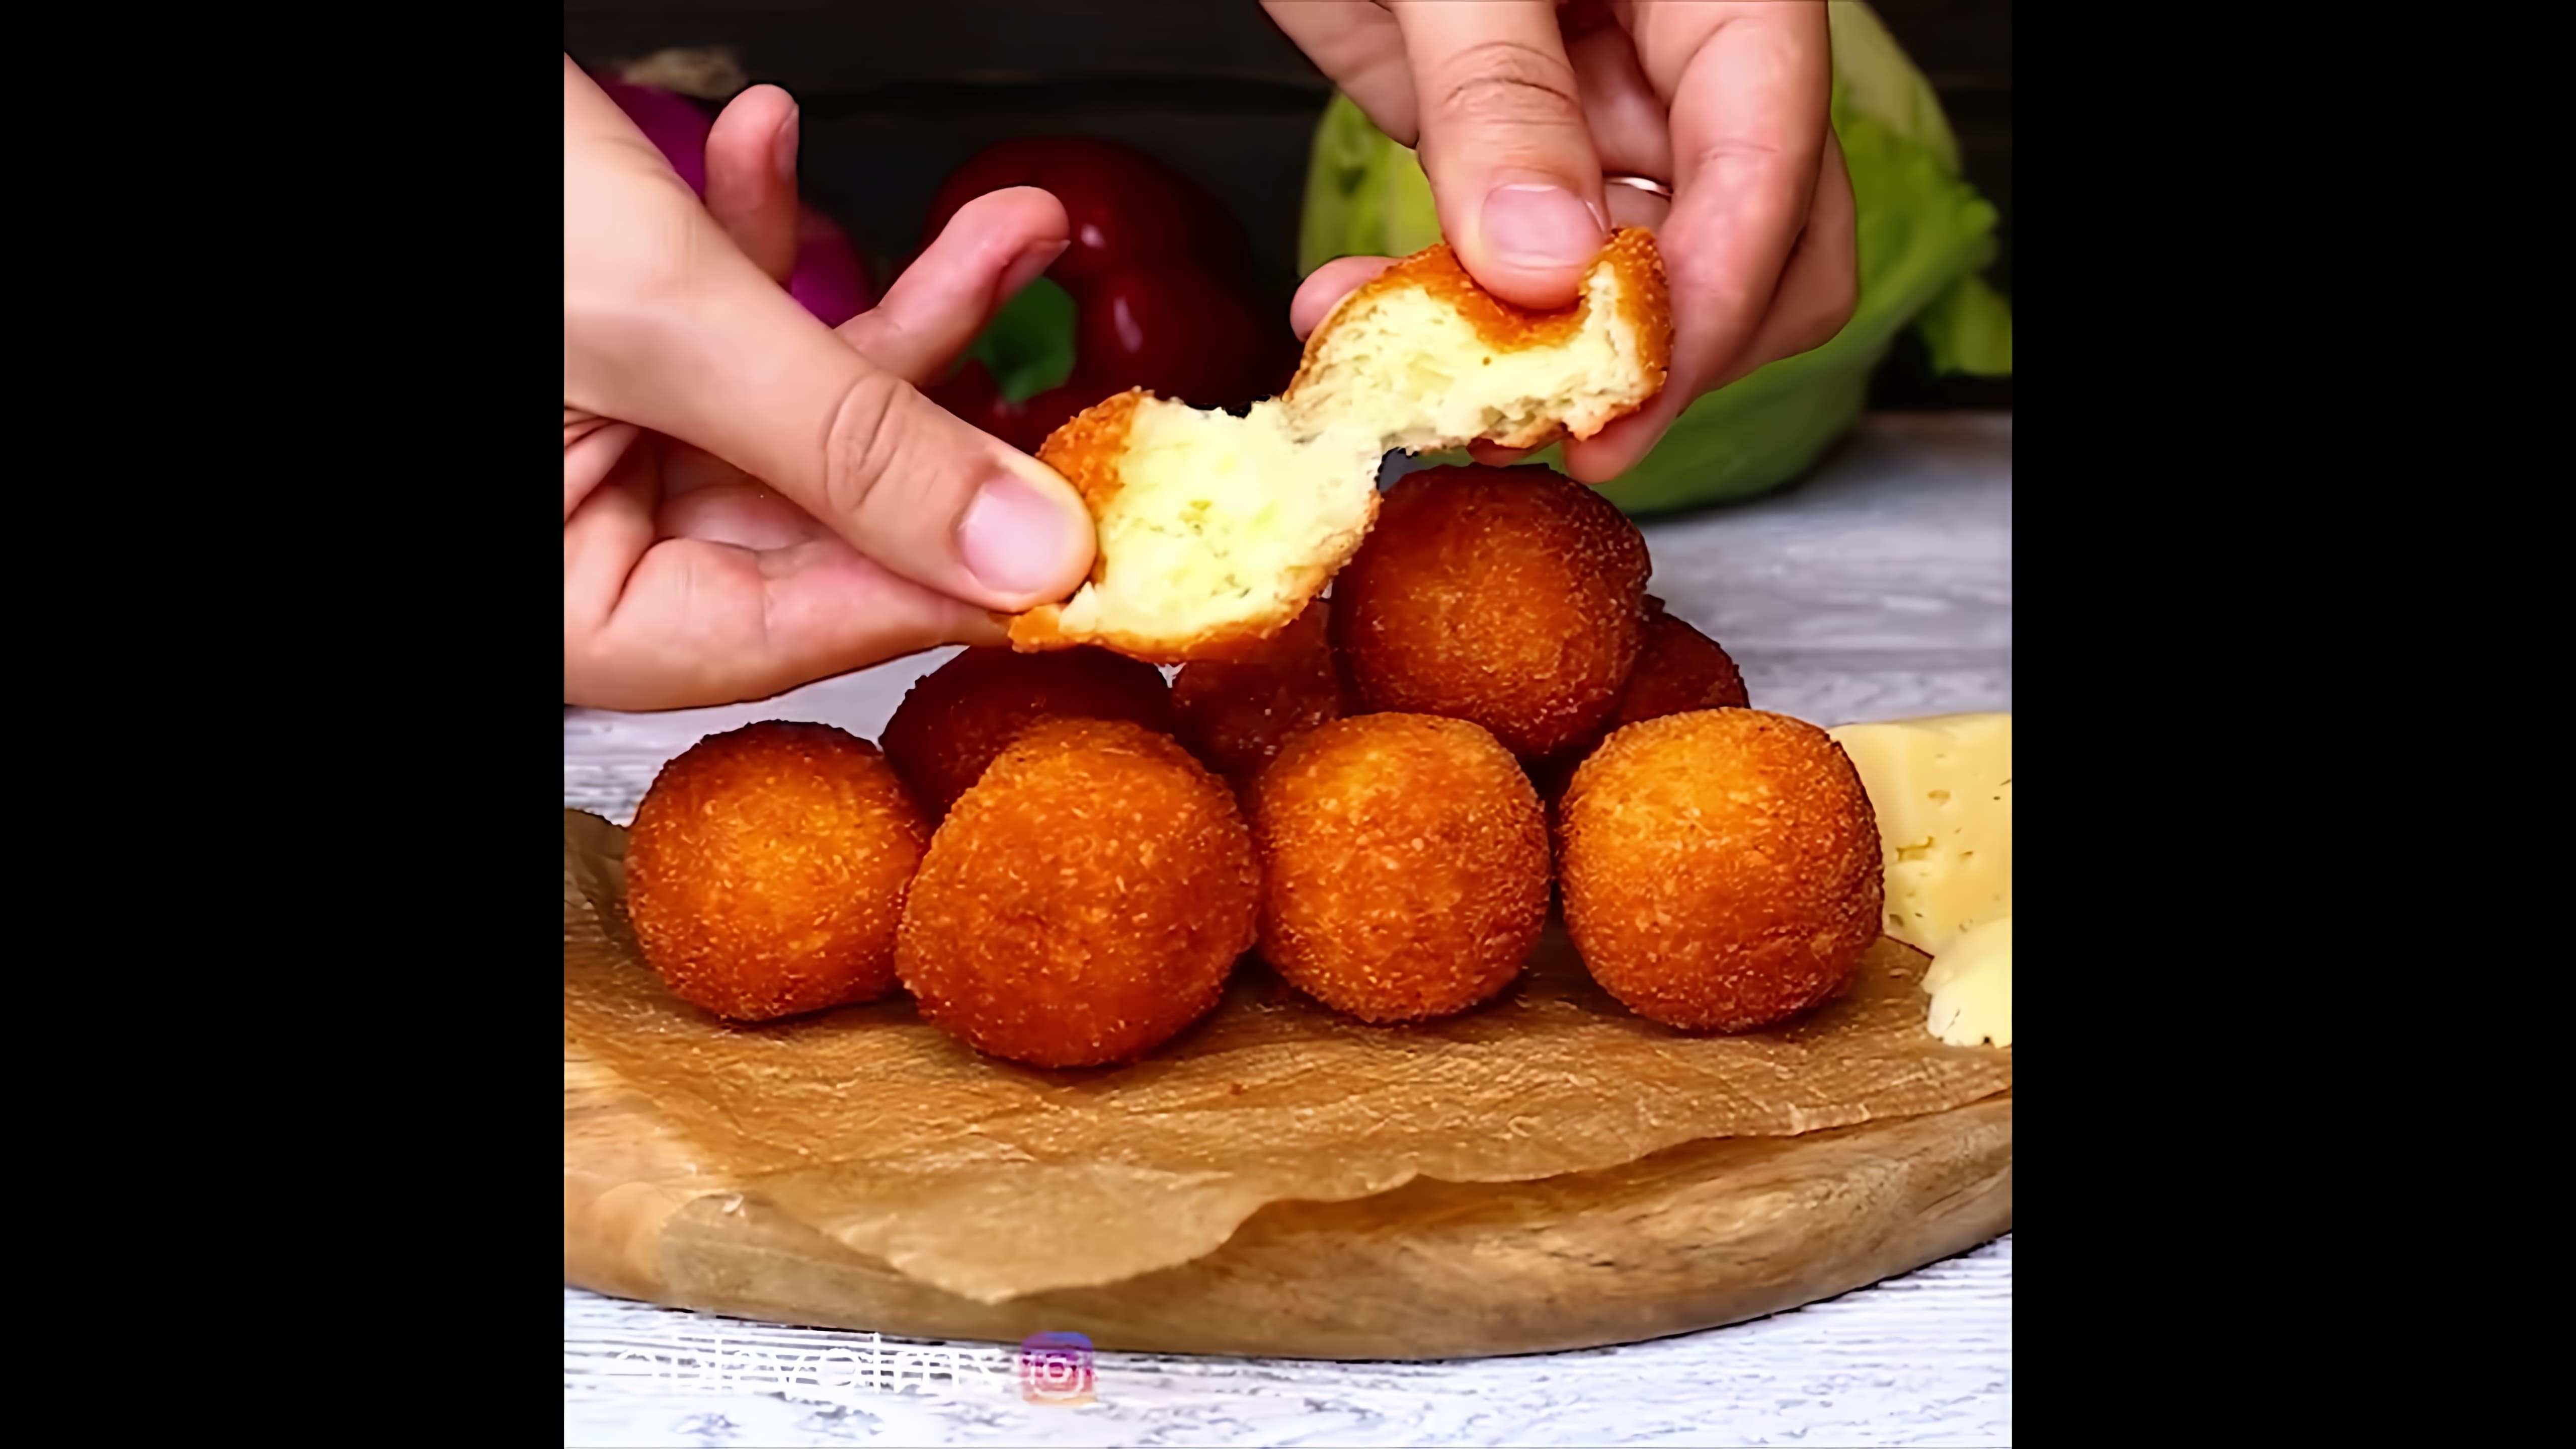 В этом видео демонстрируется рецепт приготовления сырных шариков, которые можно сделать всего за 15 минут